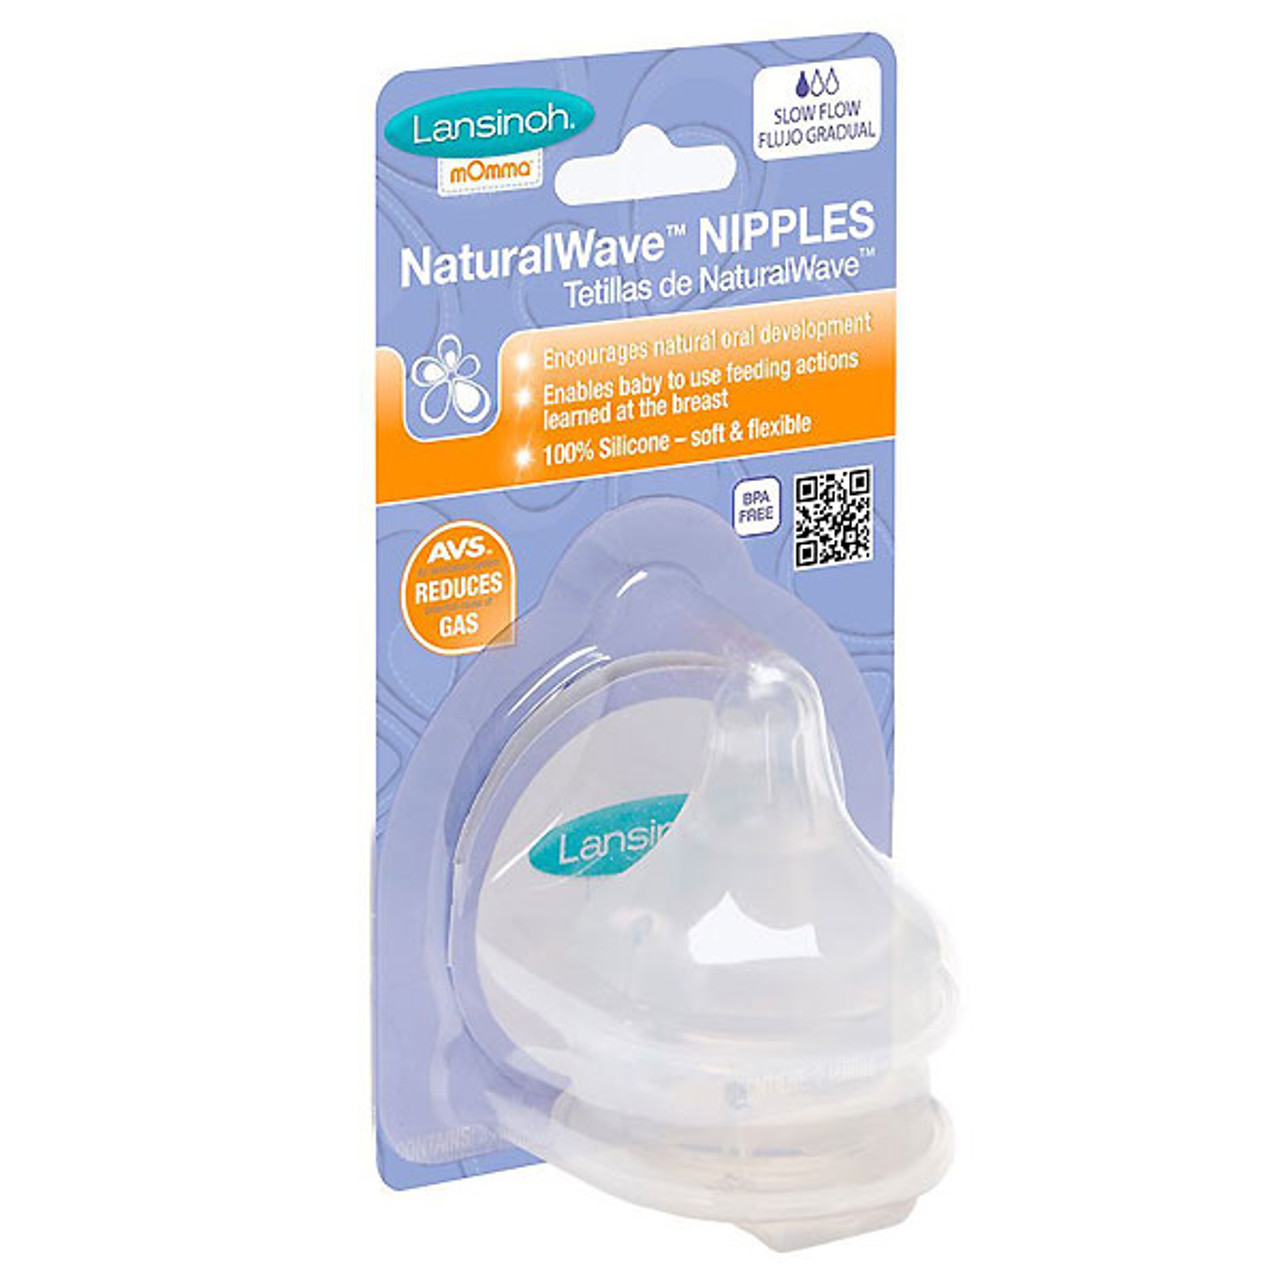 Lansinoh NaturalWave Nipple - Slow Flow, Official Retailer